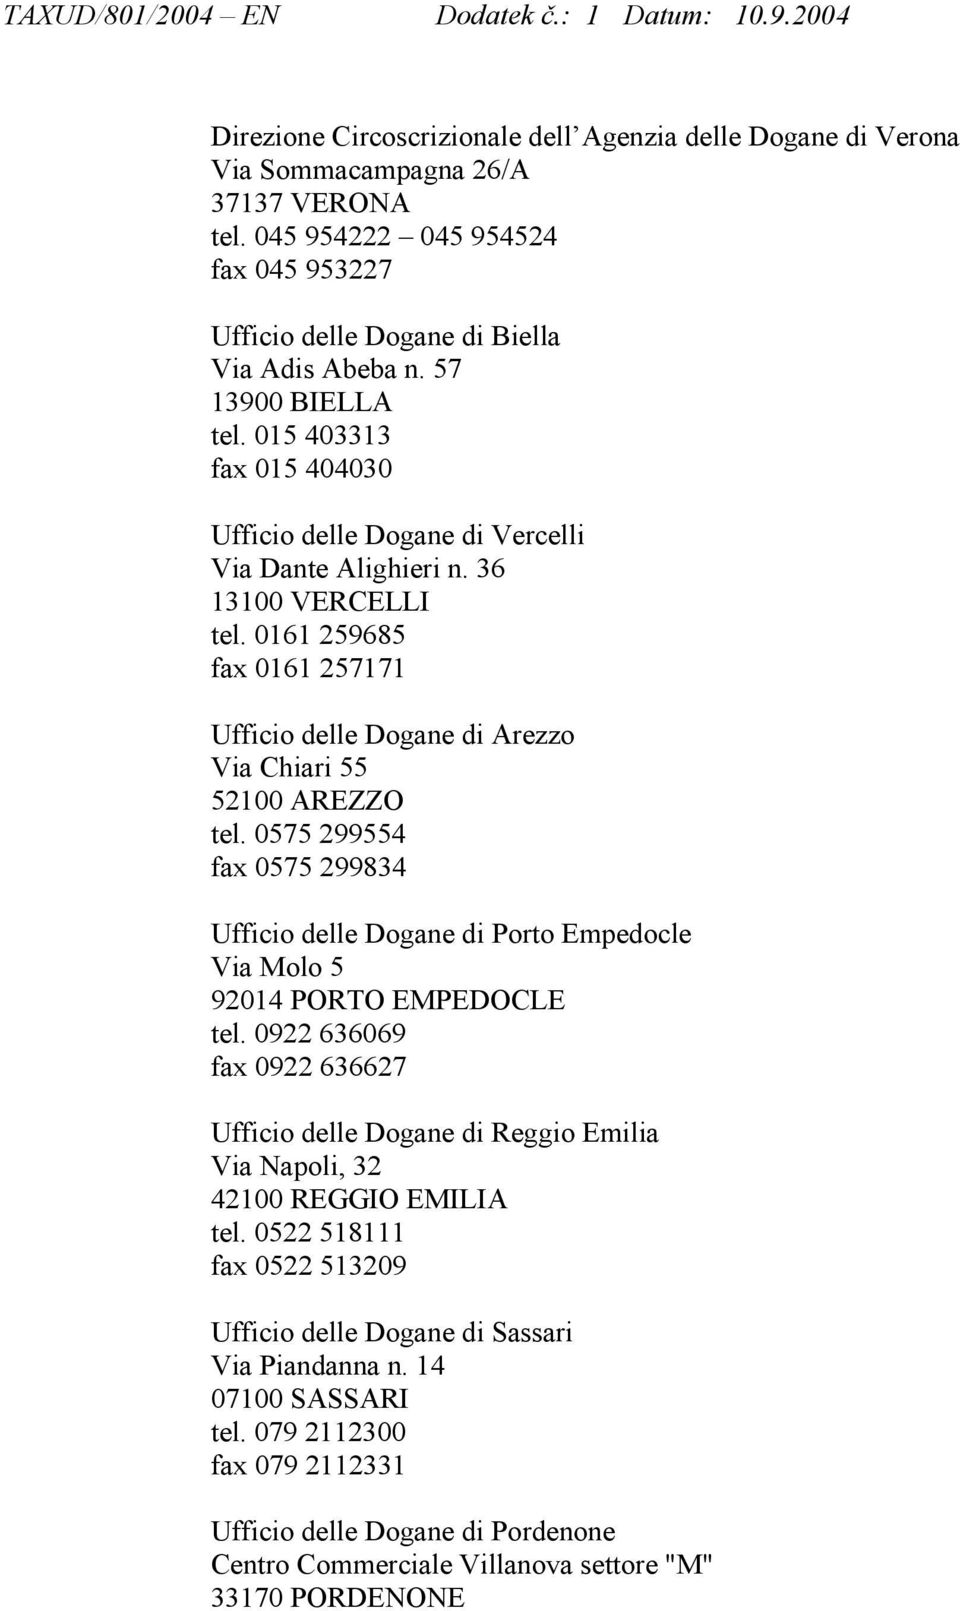 0161 259685 fax 0161 257171 Ufficio delle Dogane di Arezzo Via Chiari 55 52100 AREZZO tel. 0575 299554 fax 0575 299834 Ufficio delle Dogane di Porto Empedocle Via Molo 5 92014 PORTO EMPEDOCLE tel.